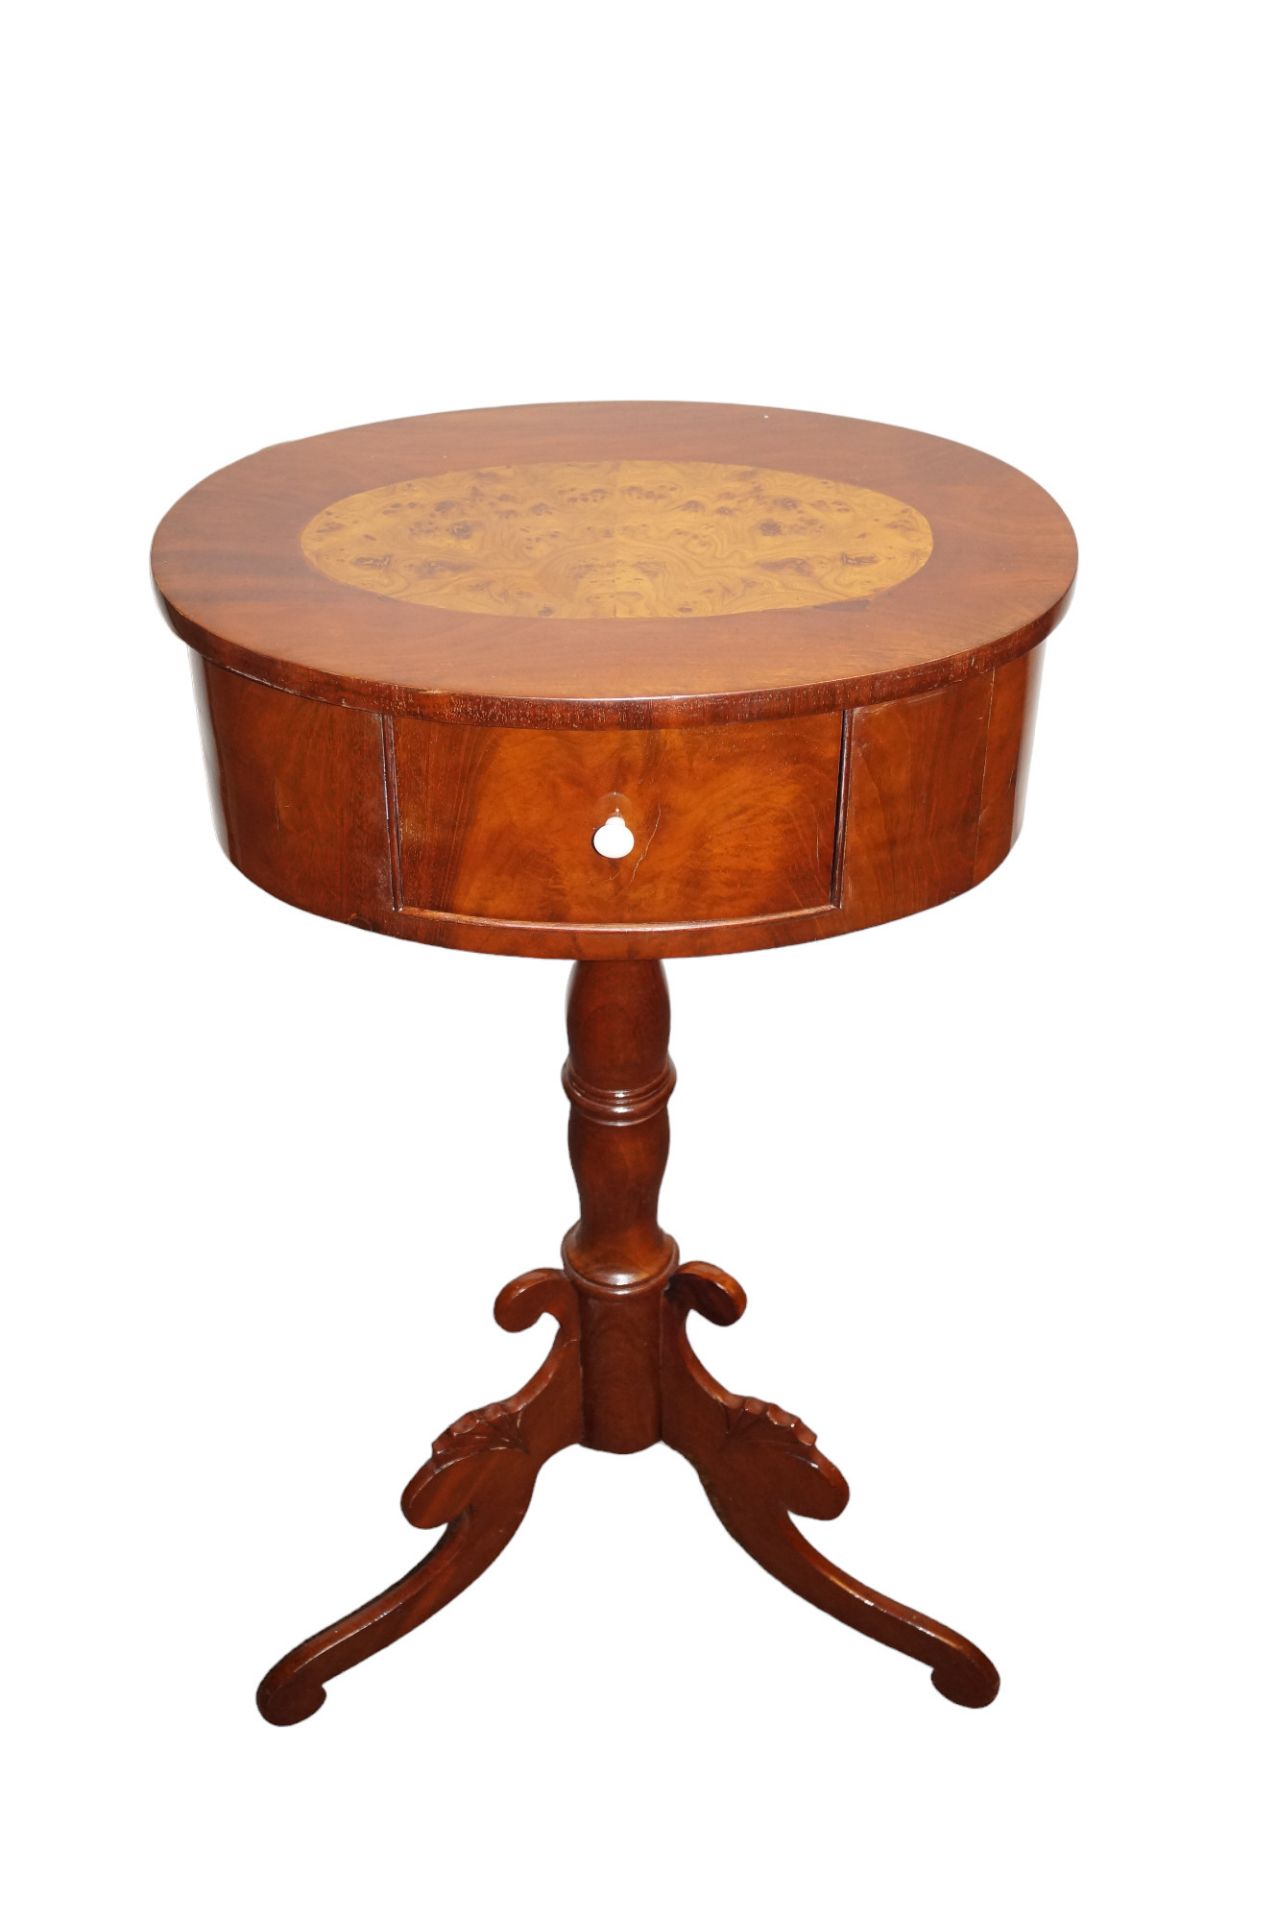 Ovales Tischchen in Tonnenform mit kleinem Schub auf der Stirnseite; dreipassiger Stand; auf der De - Bild 2 aus 5